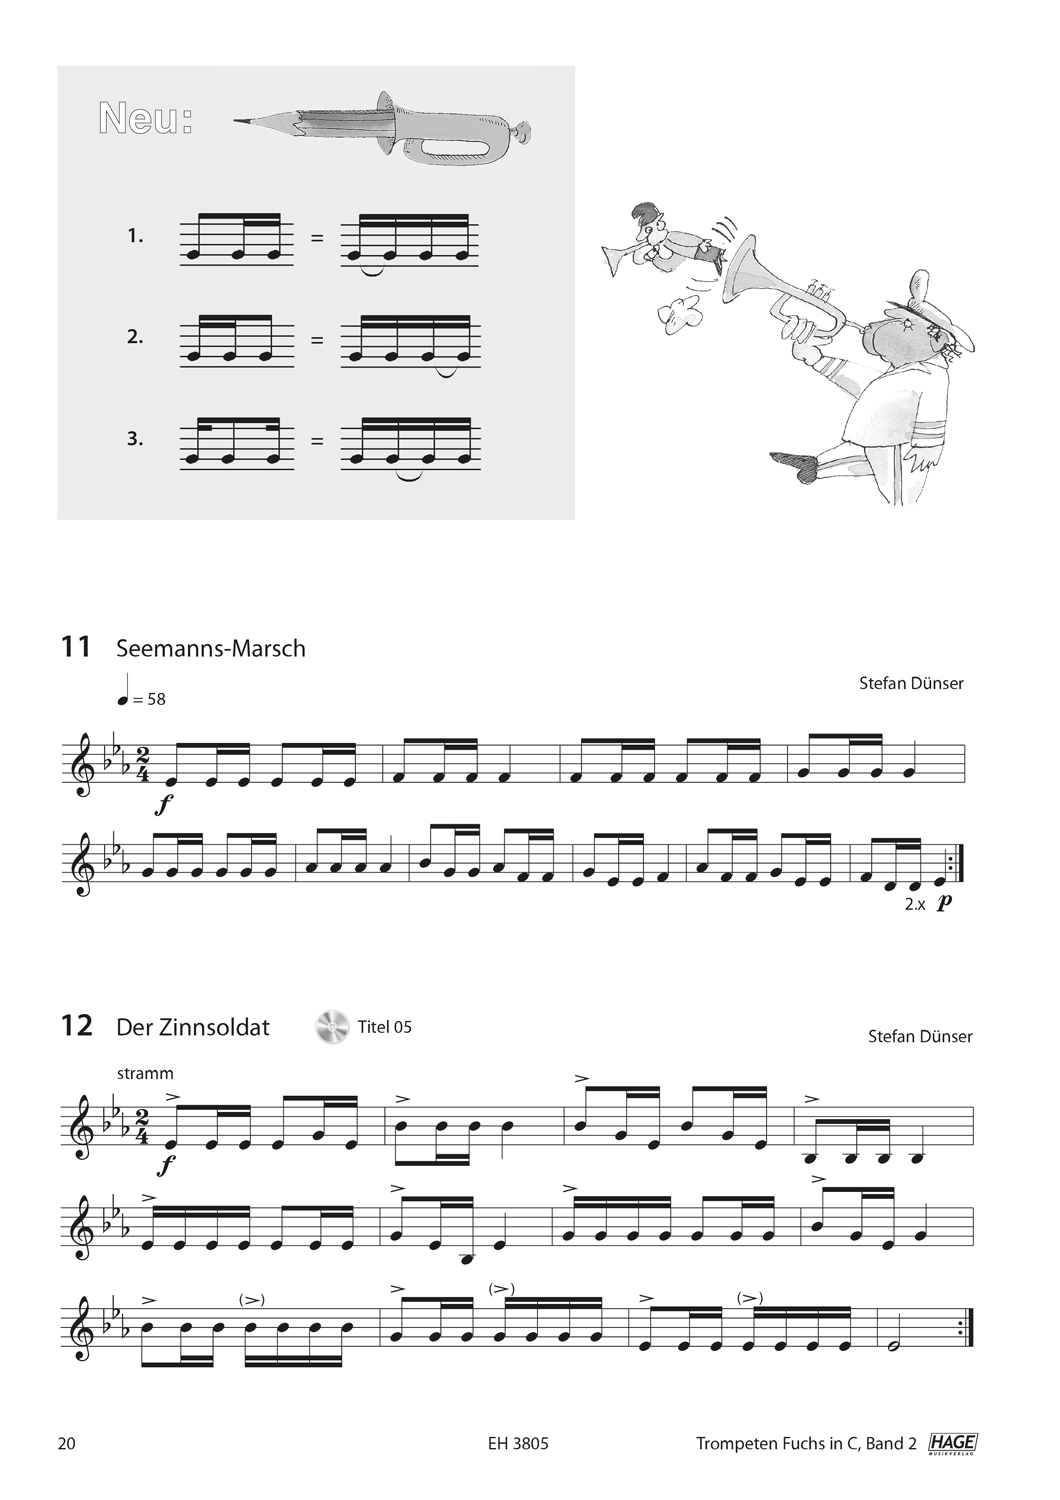 Trompeten Fuchs Band 2 in C für Posaunenchor (mit CD) Seiten 5